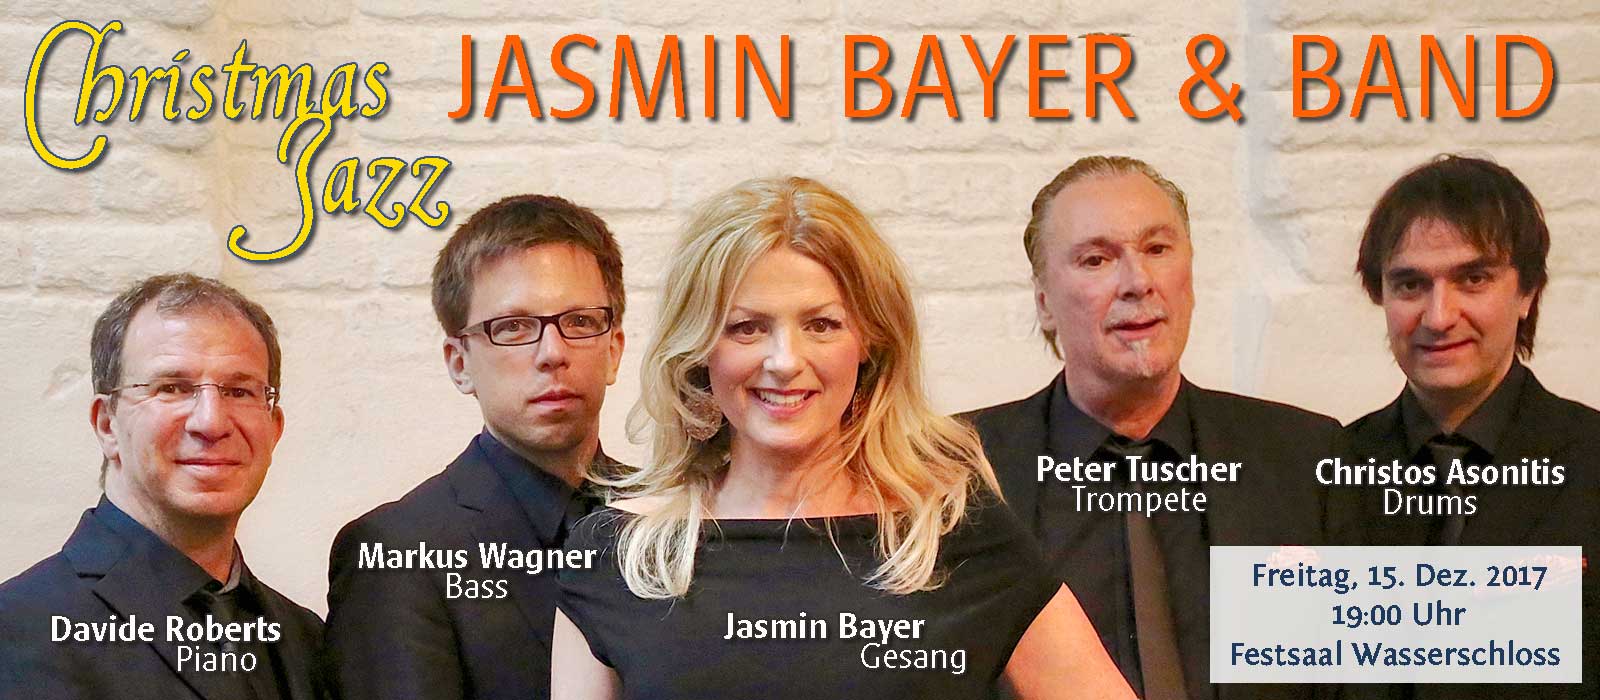 JASMIN BAYER & BAND